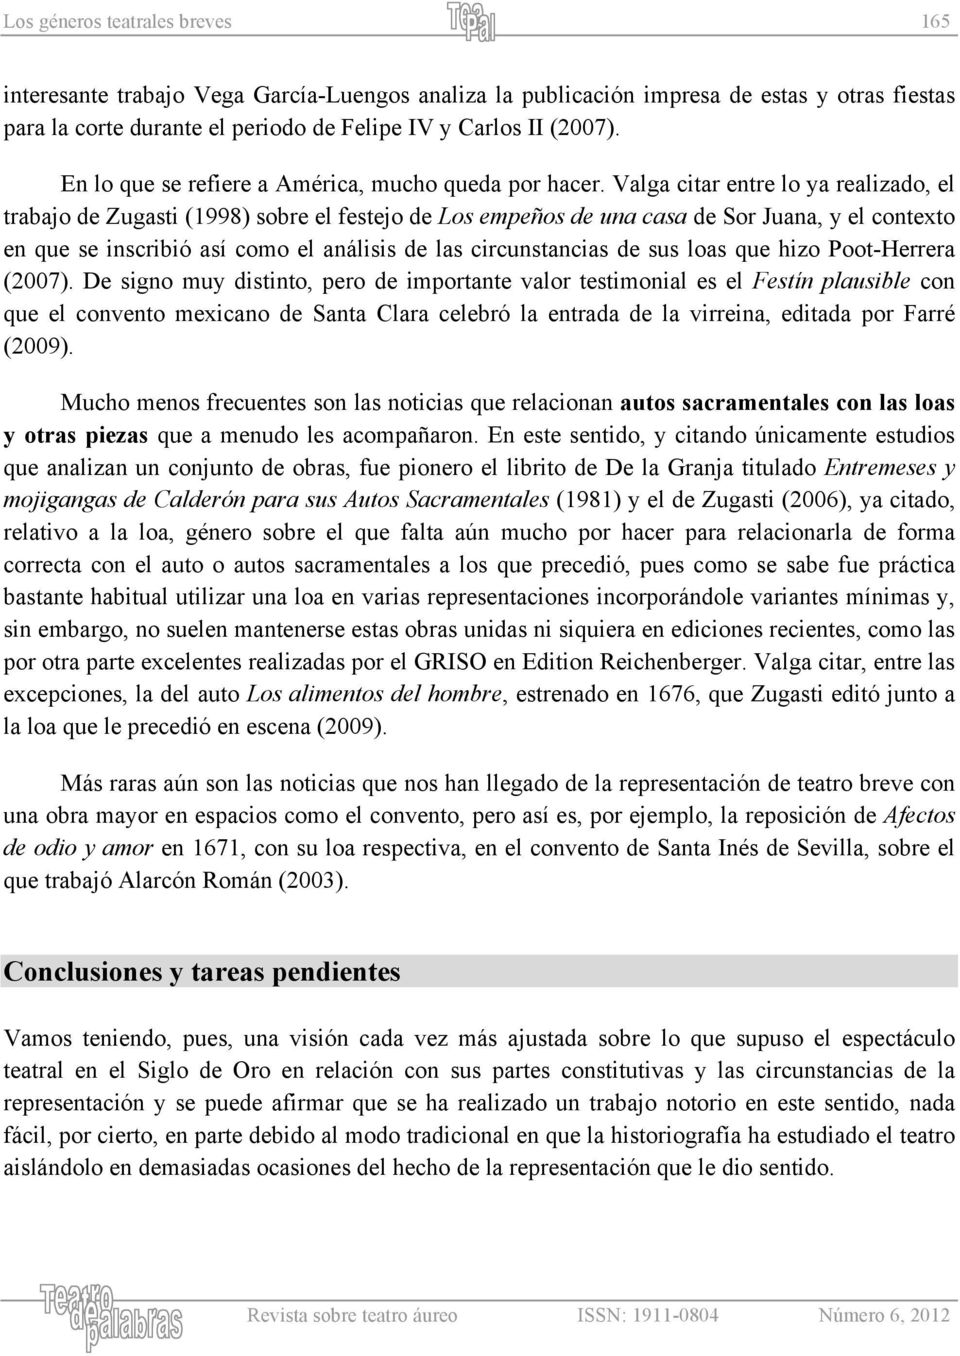 Valga citar entre lo ya realizado, el trabajo de Zugasti (1998) sobre el festejo de Los empeños de una casa de Sor Juana, y el contexto en que se inscribió así como el análisis de las circunstancias